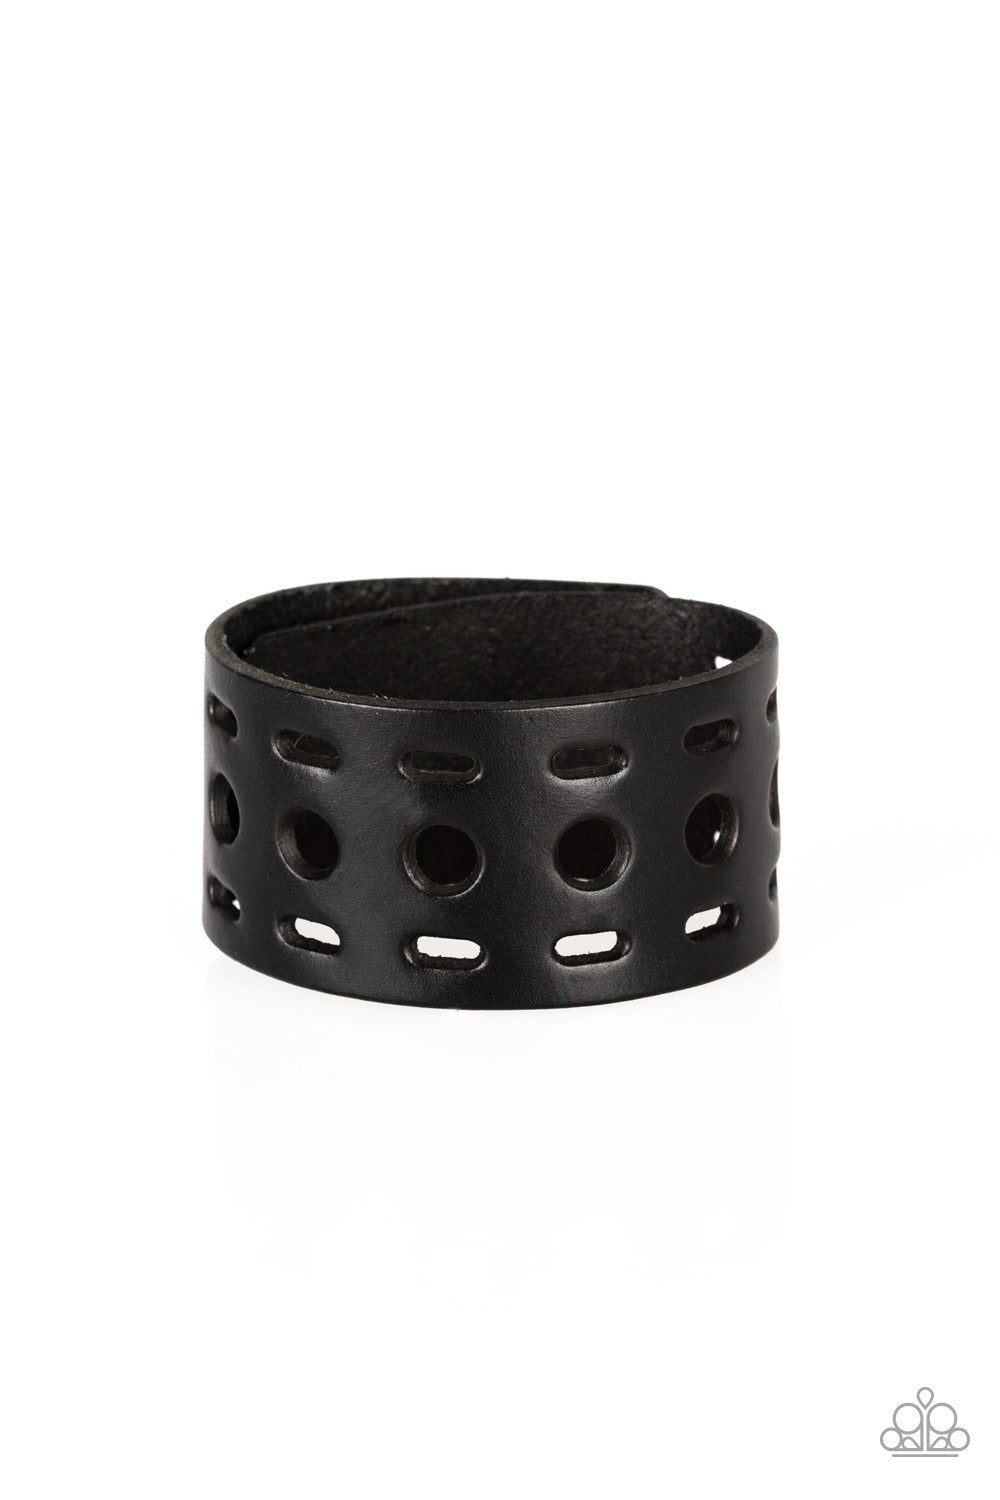 Free RANGER - Black Leather Bracelet